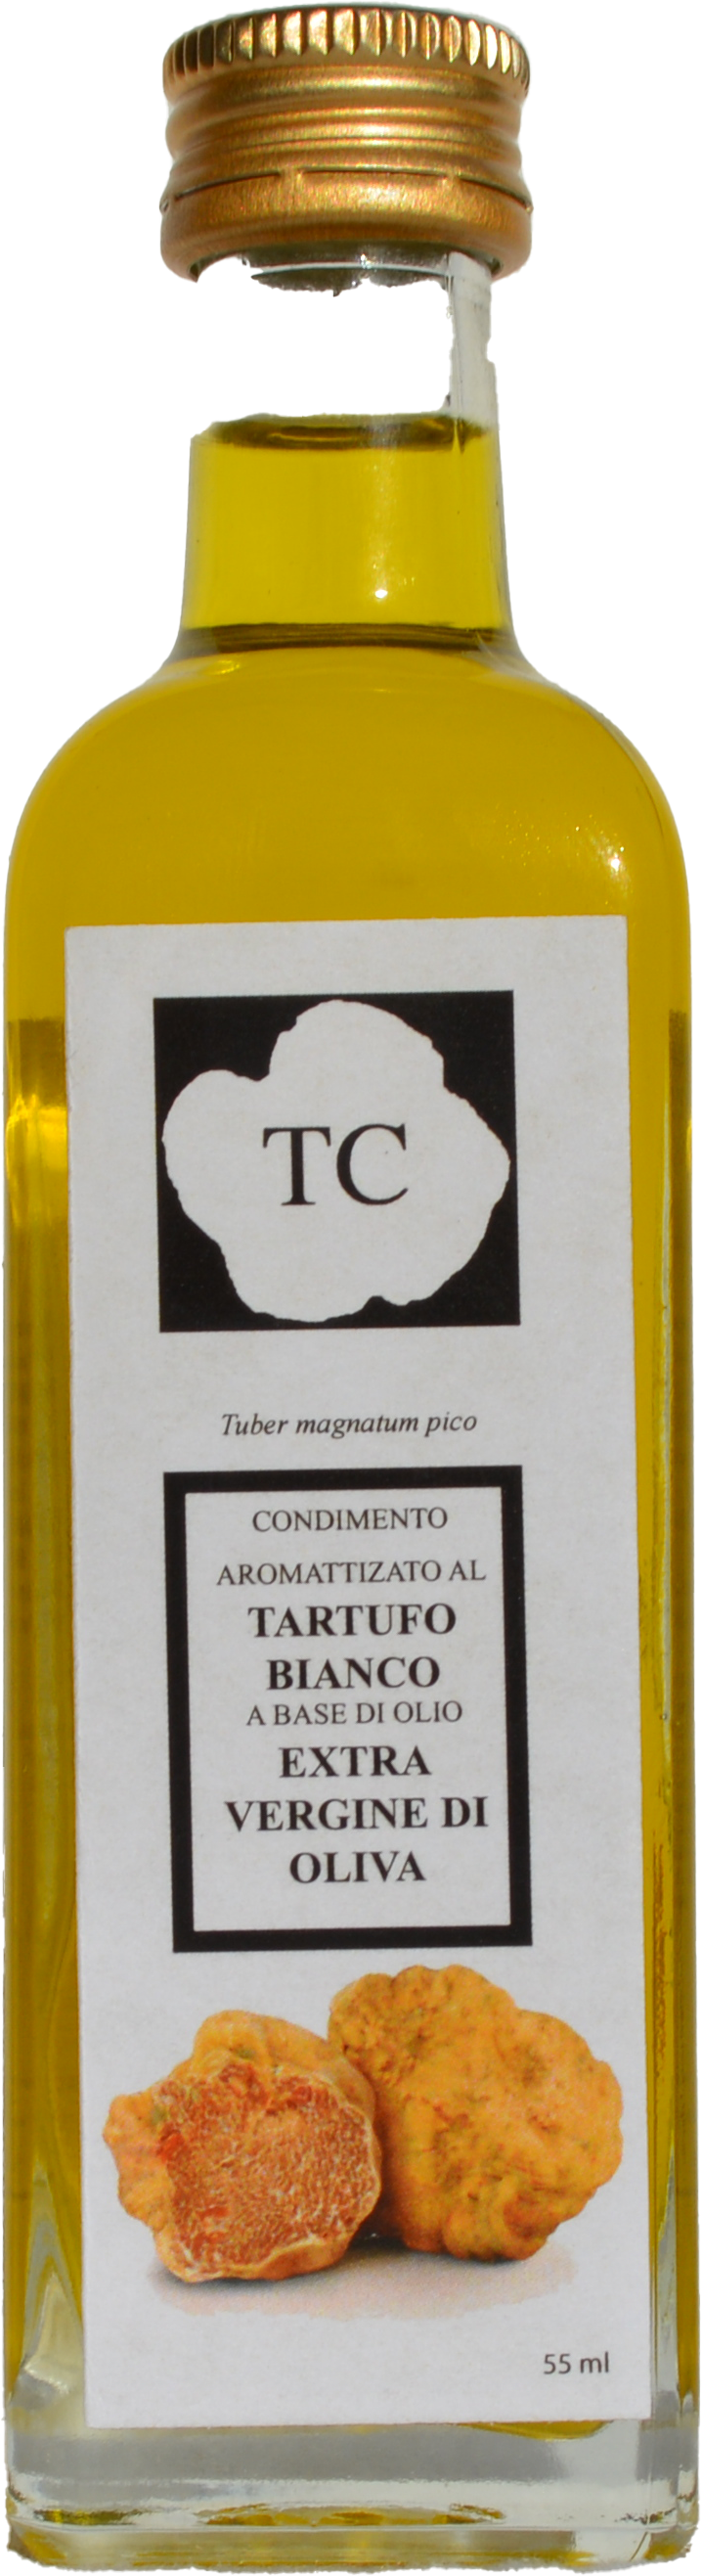 Condimento aromatizzato a base di olio evo al tartufo bianco